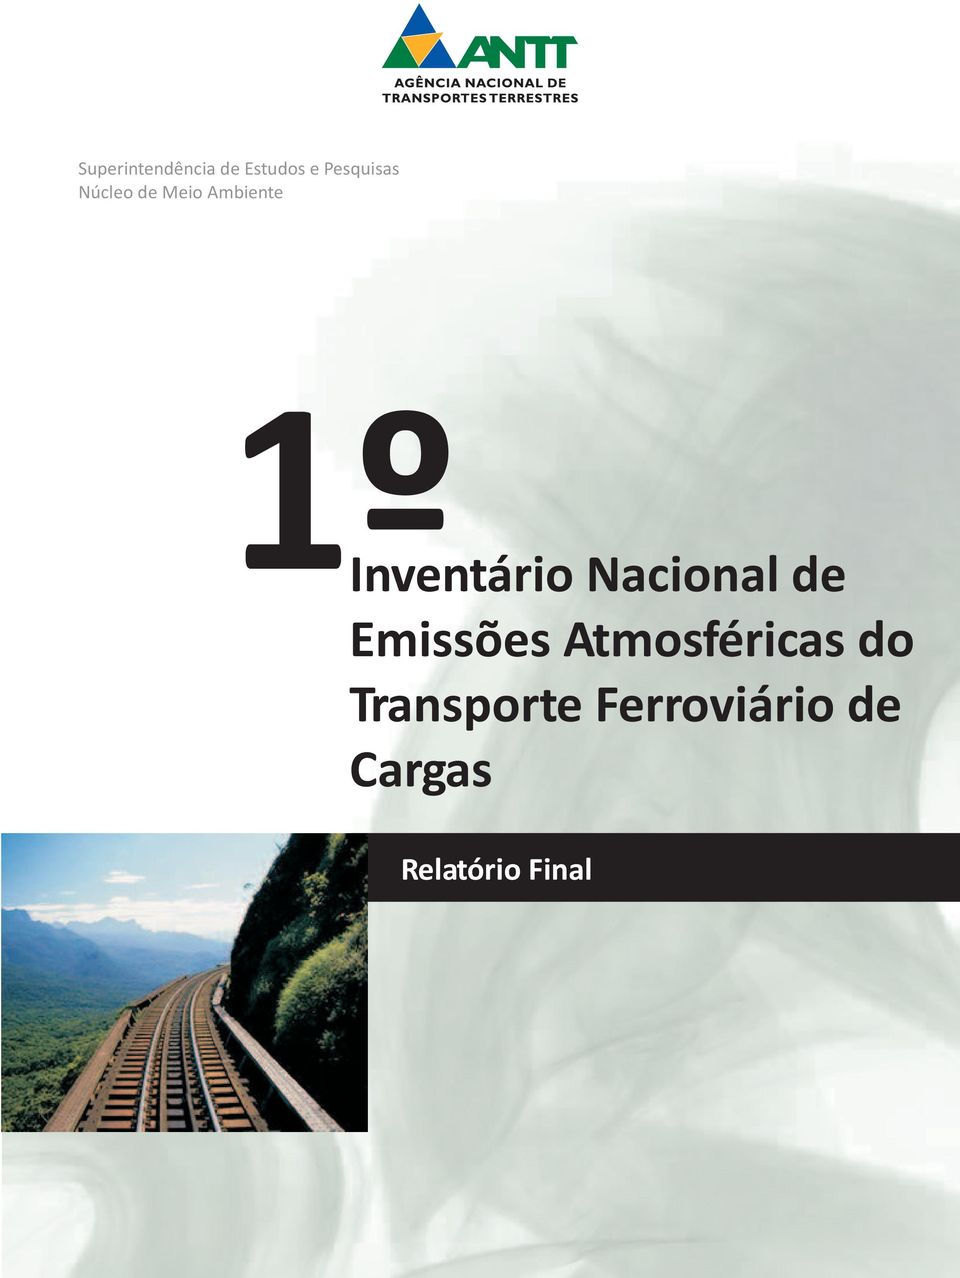 Nacional de Emissões Atmosféricas do